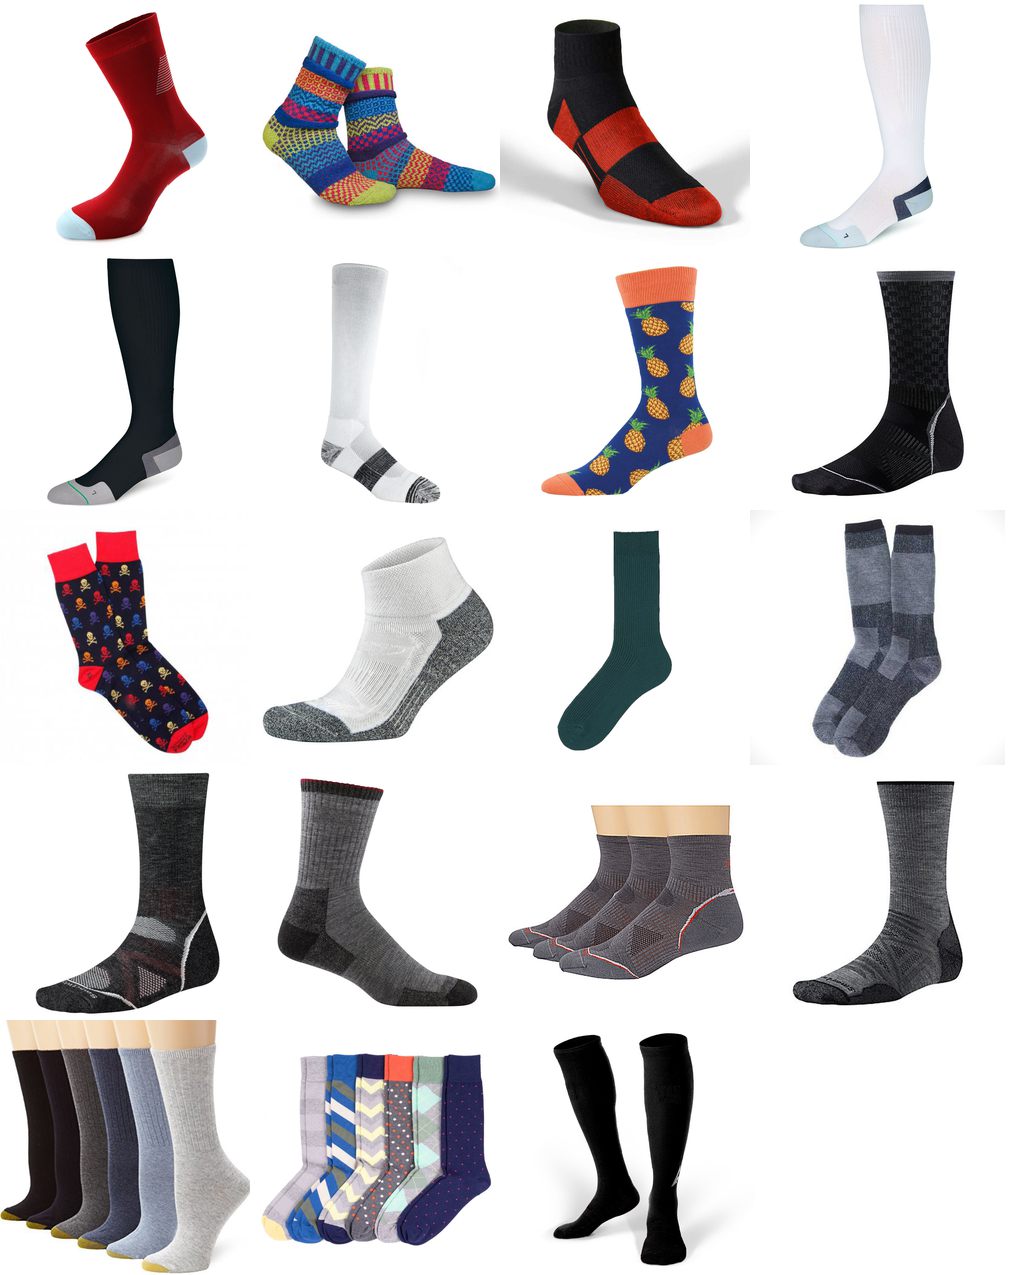 the best socks